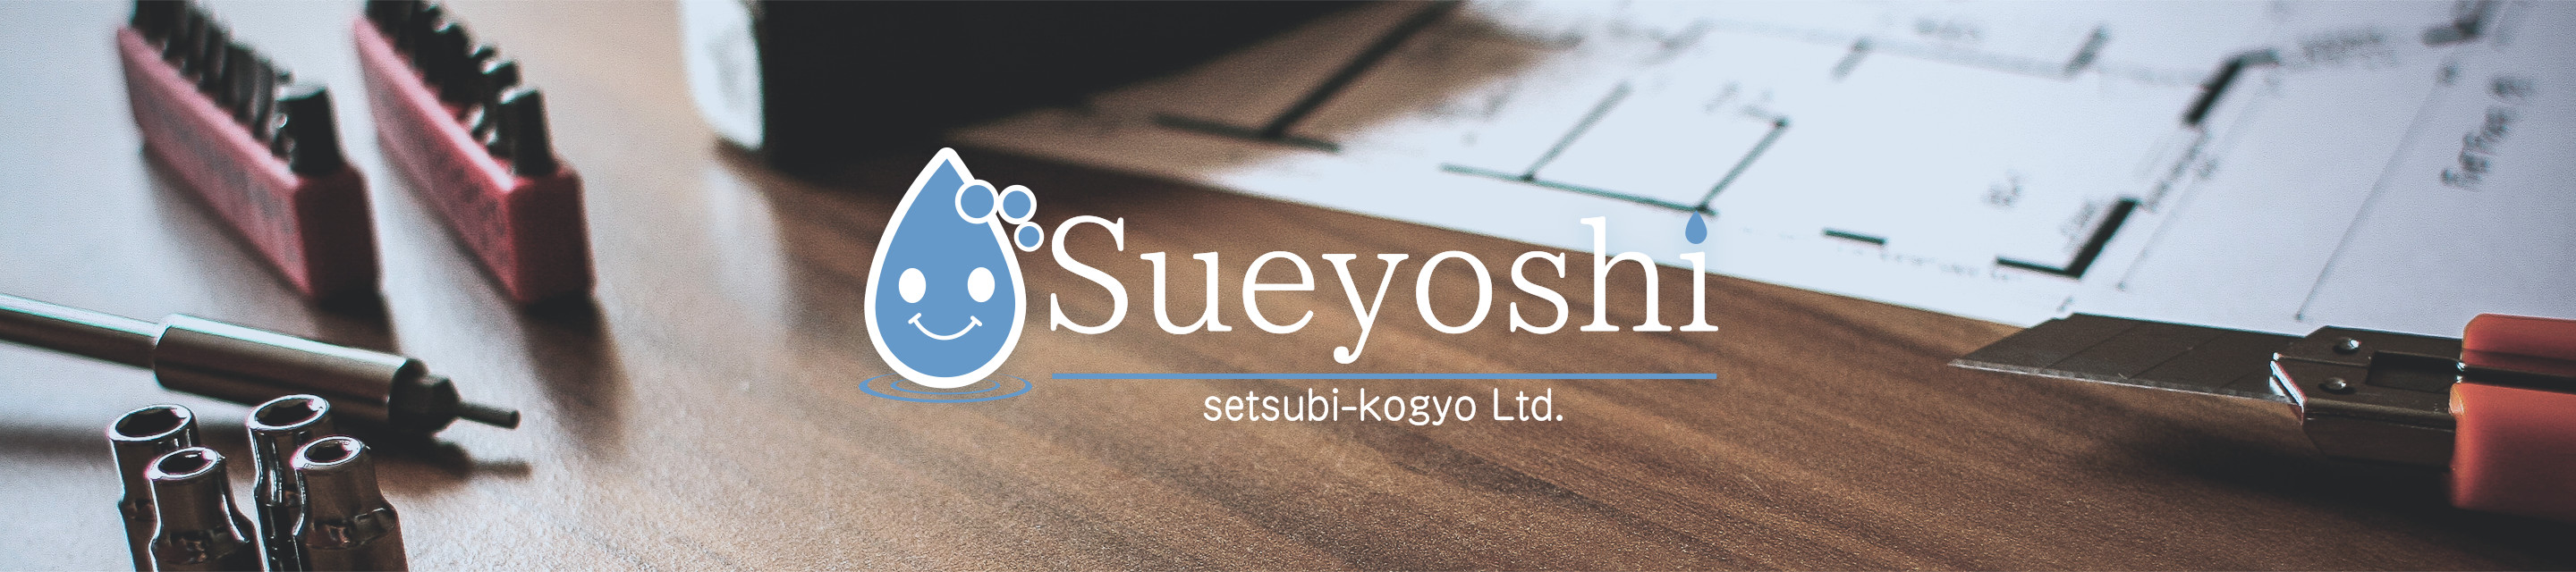 Sueyoshi setsubi-kogyo Ltd.